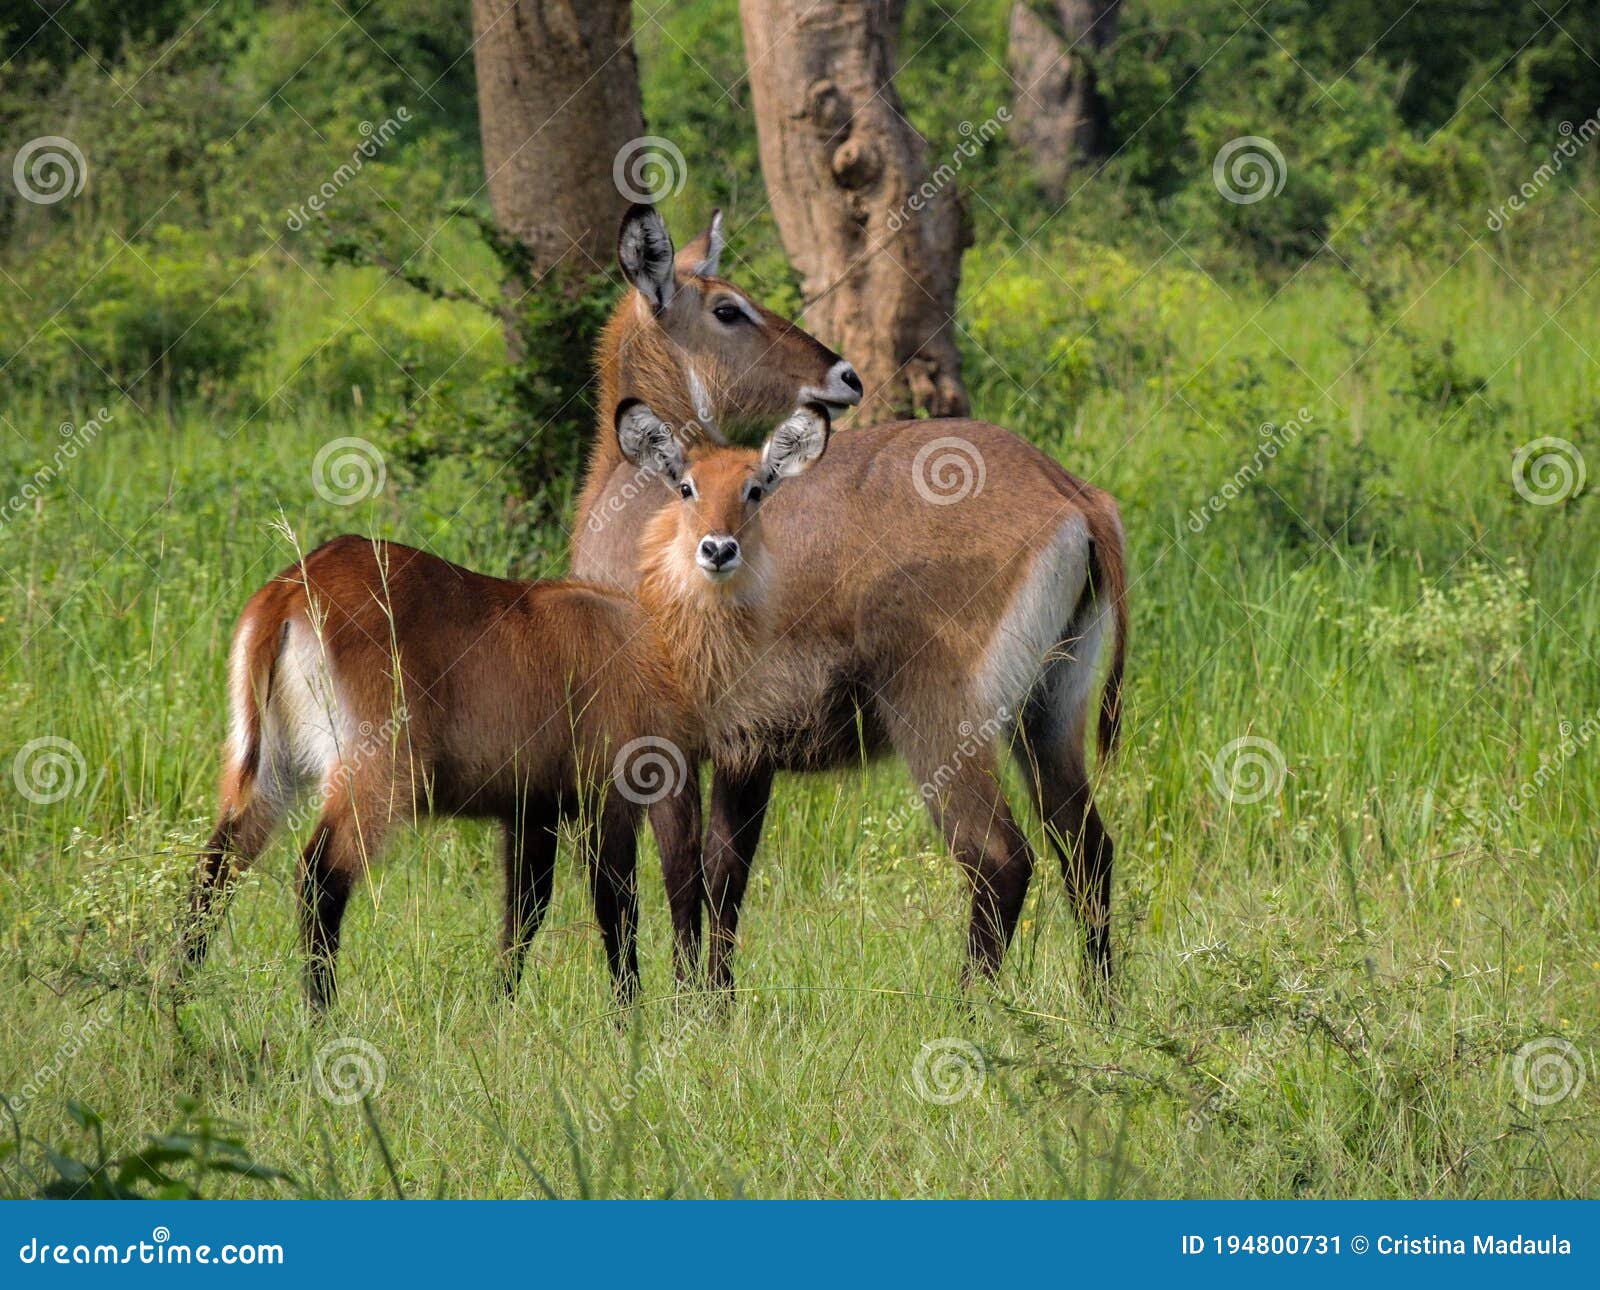 defassa waterbuck kobus ellipsiprymnus defassa or antÃÂ­lope acuÃÂ¡tico, murchison falls national park,uganda